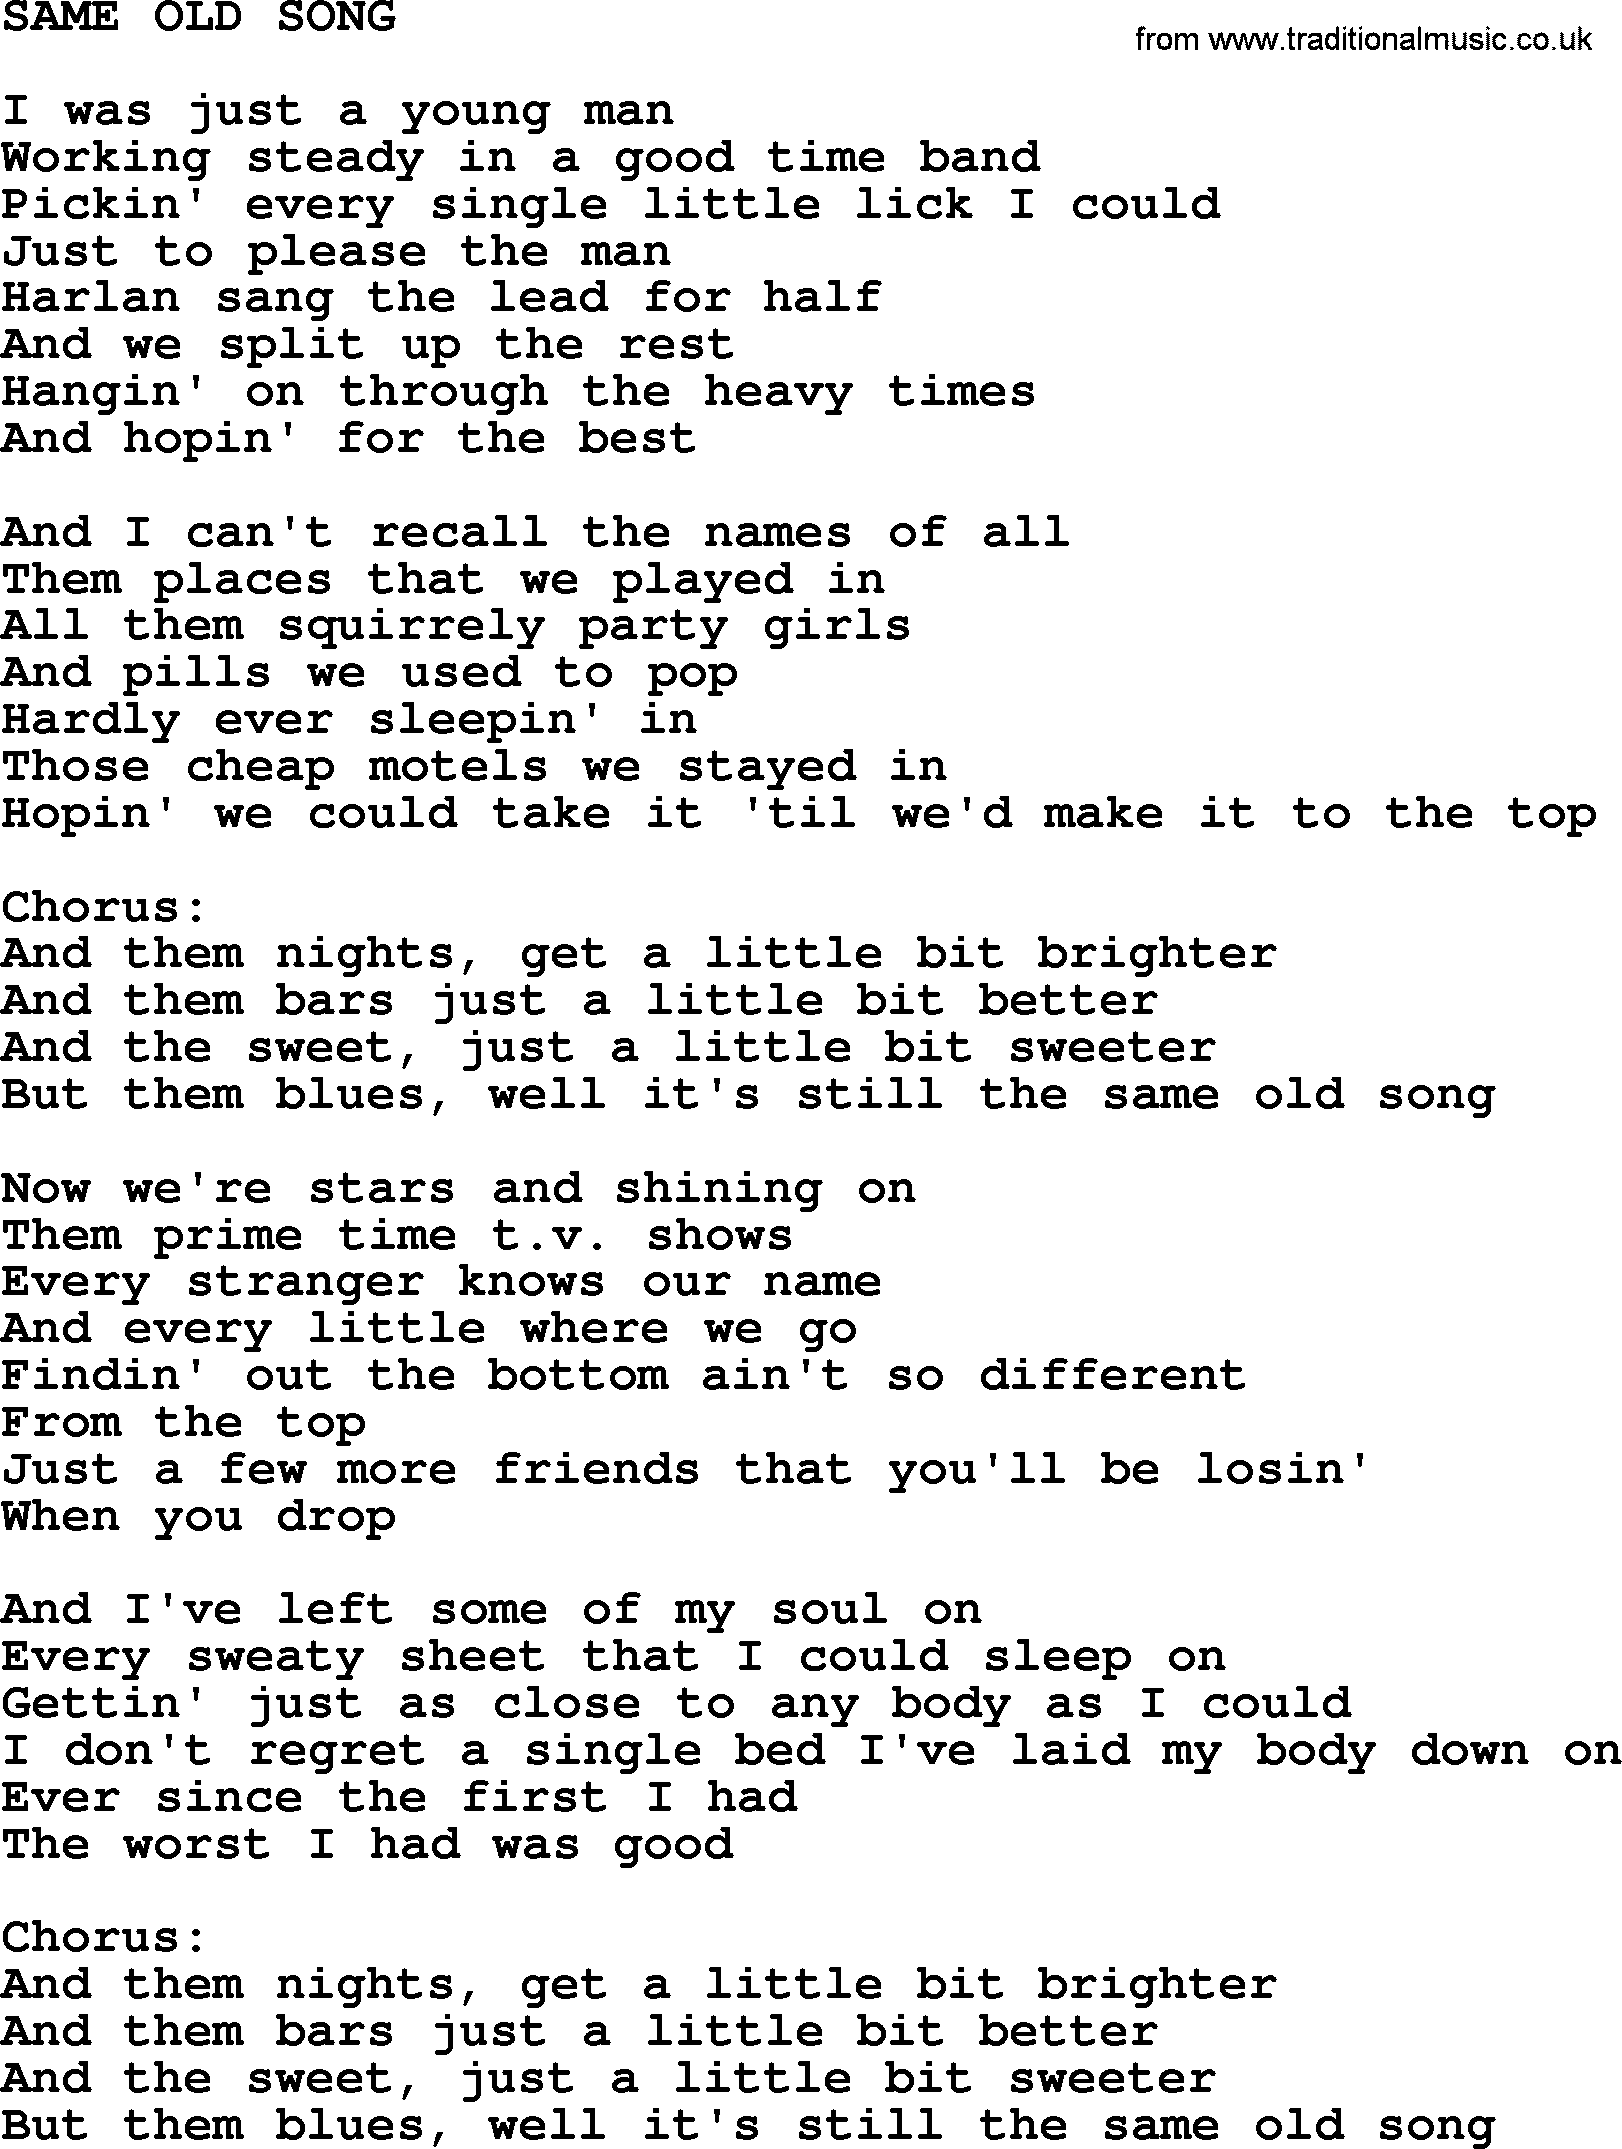 Kris Kristofferson song: Same Old Song lyrics